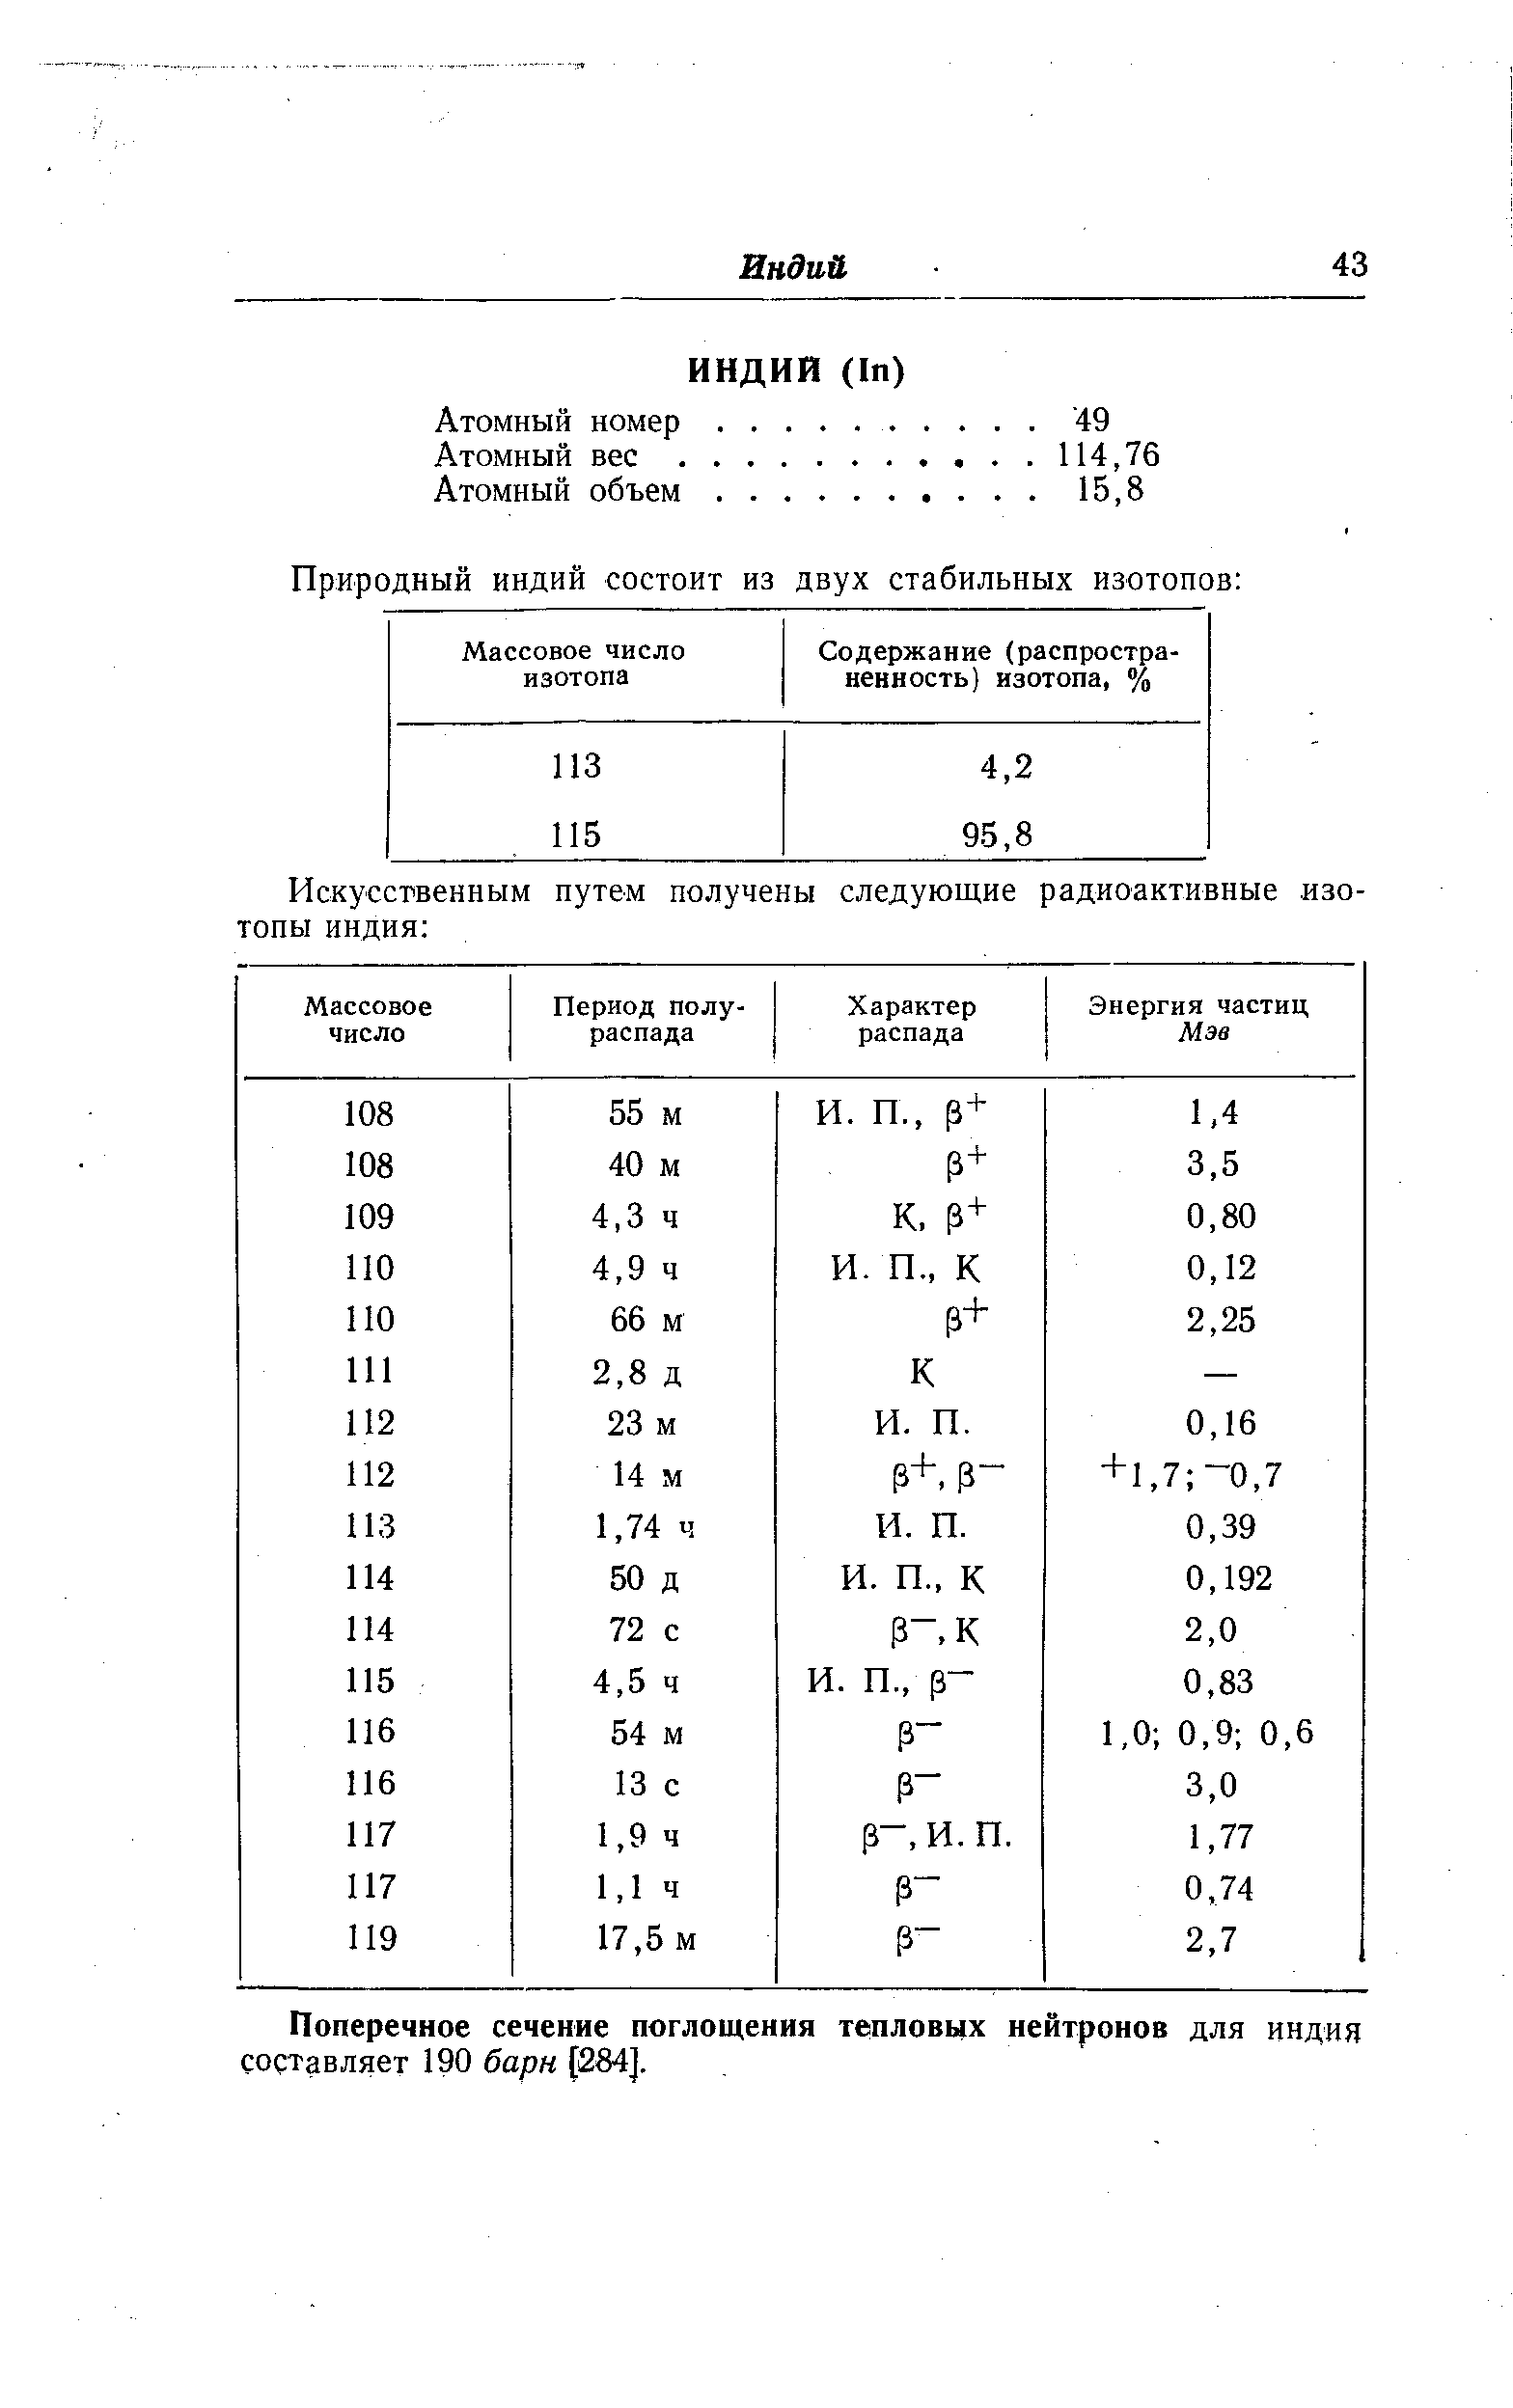 Поперечное сечение поглощения тепловых нейтронов для индия составляет 190 барн [284].